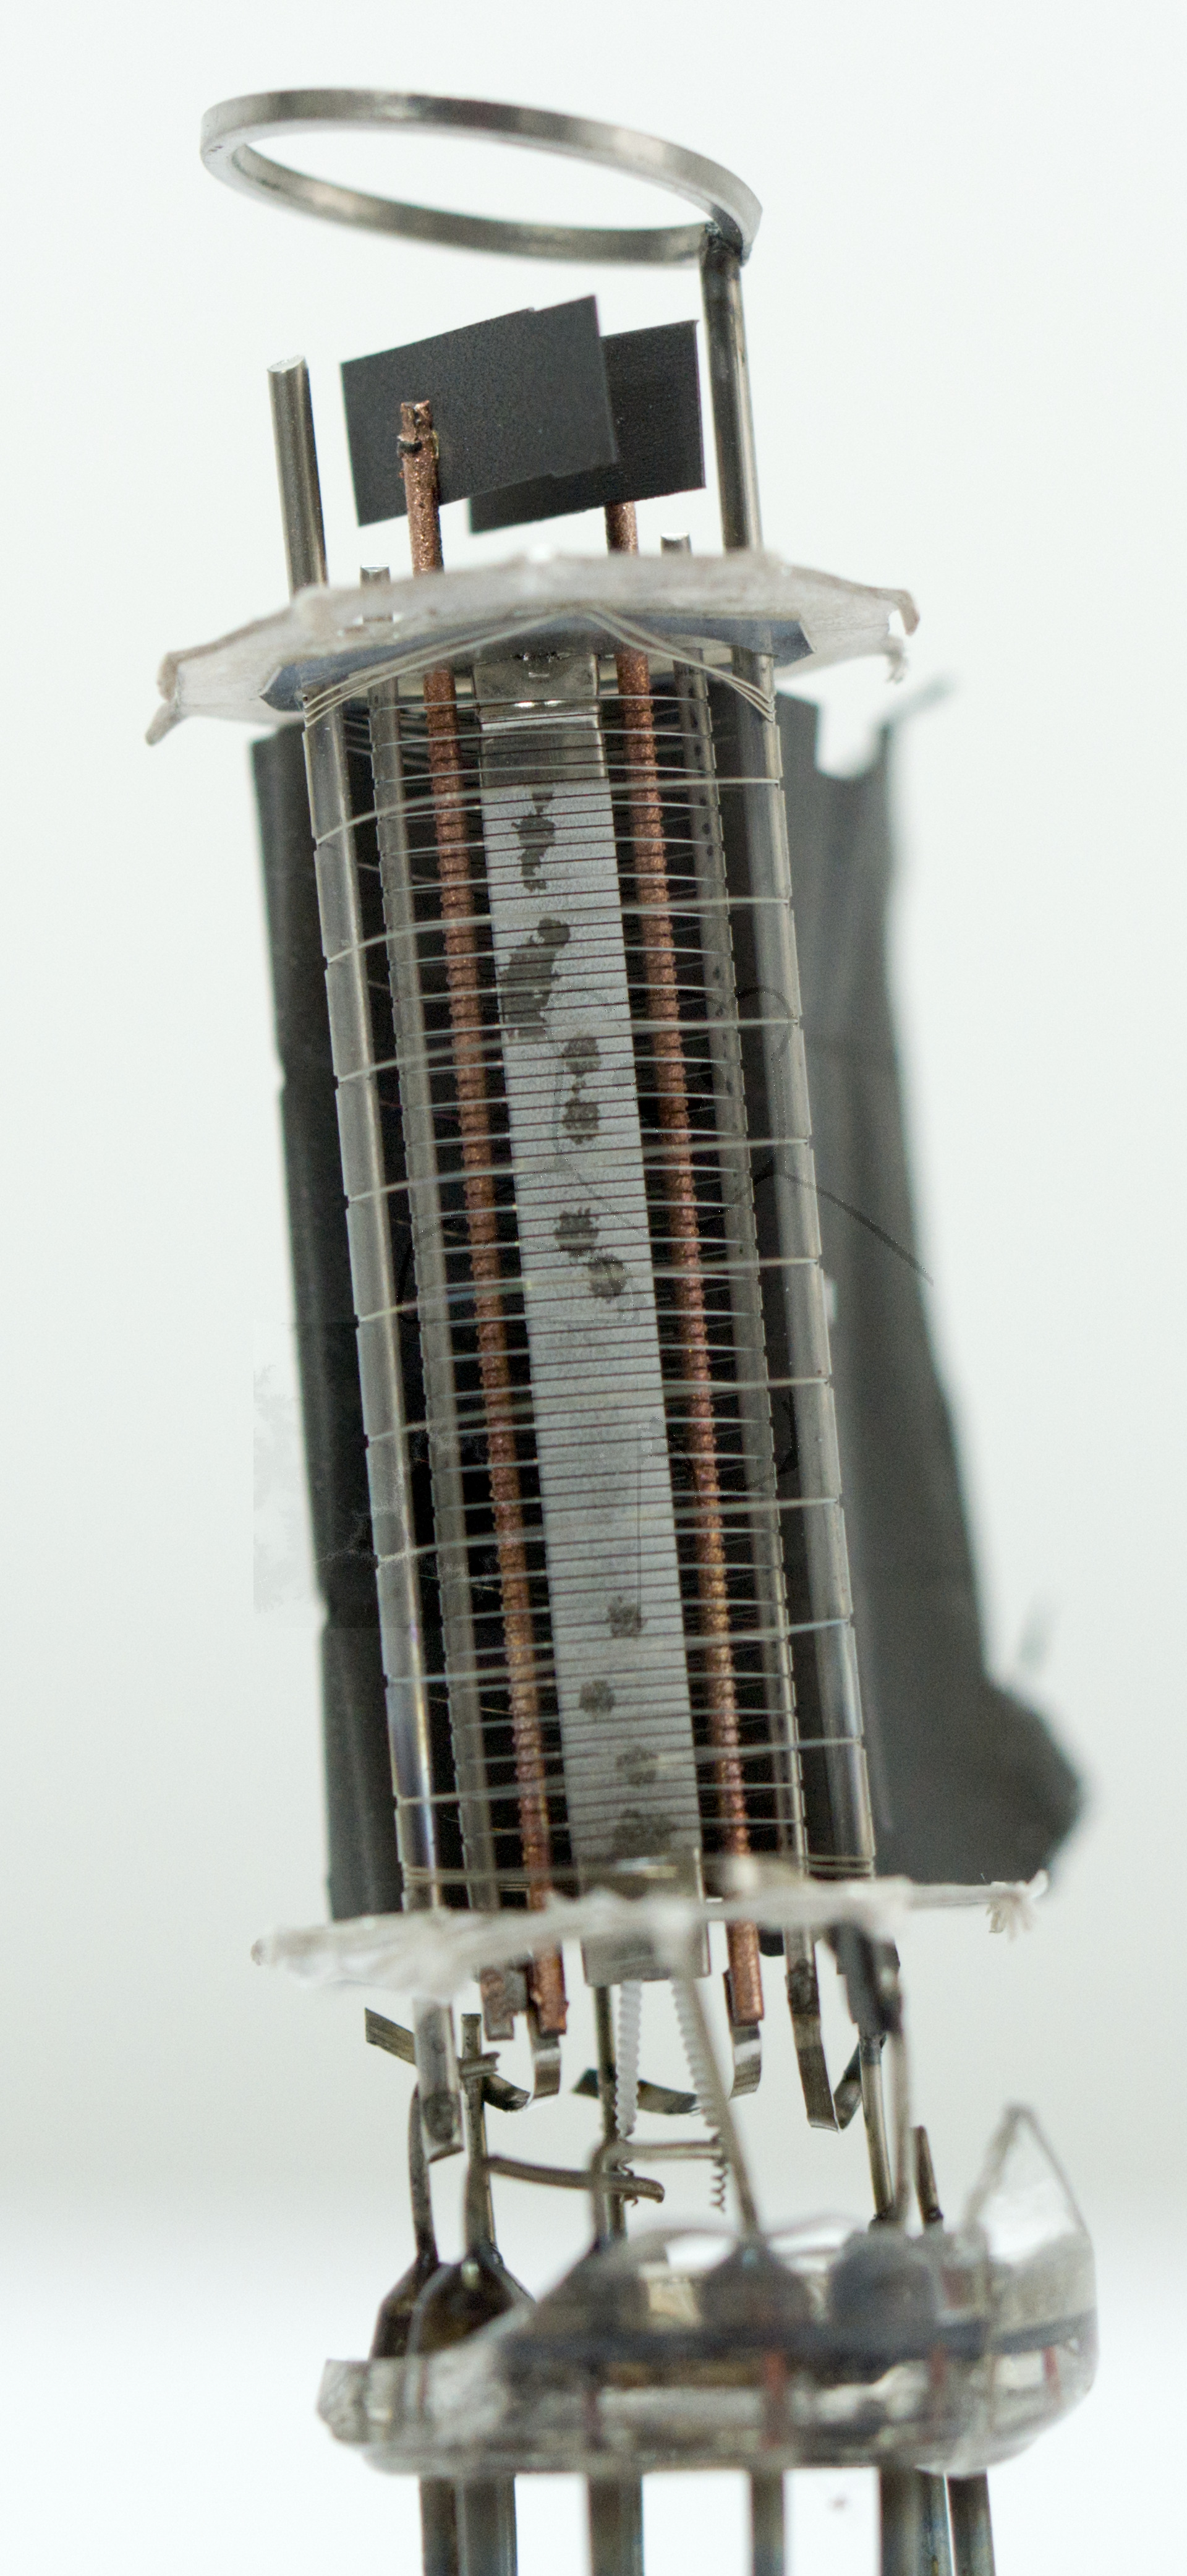 Makroaufnahme EL84 Bild 4 - Geöffnetes Anodenblech (Wurde mit Vakuumfehler betrieben und ist 'durchgeschlagen')